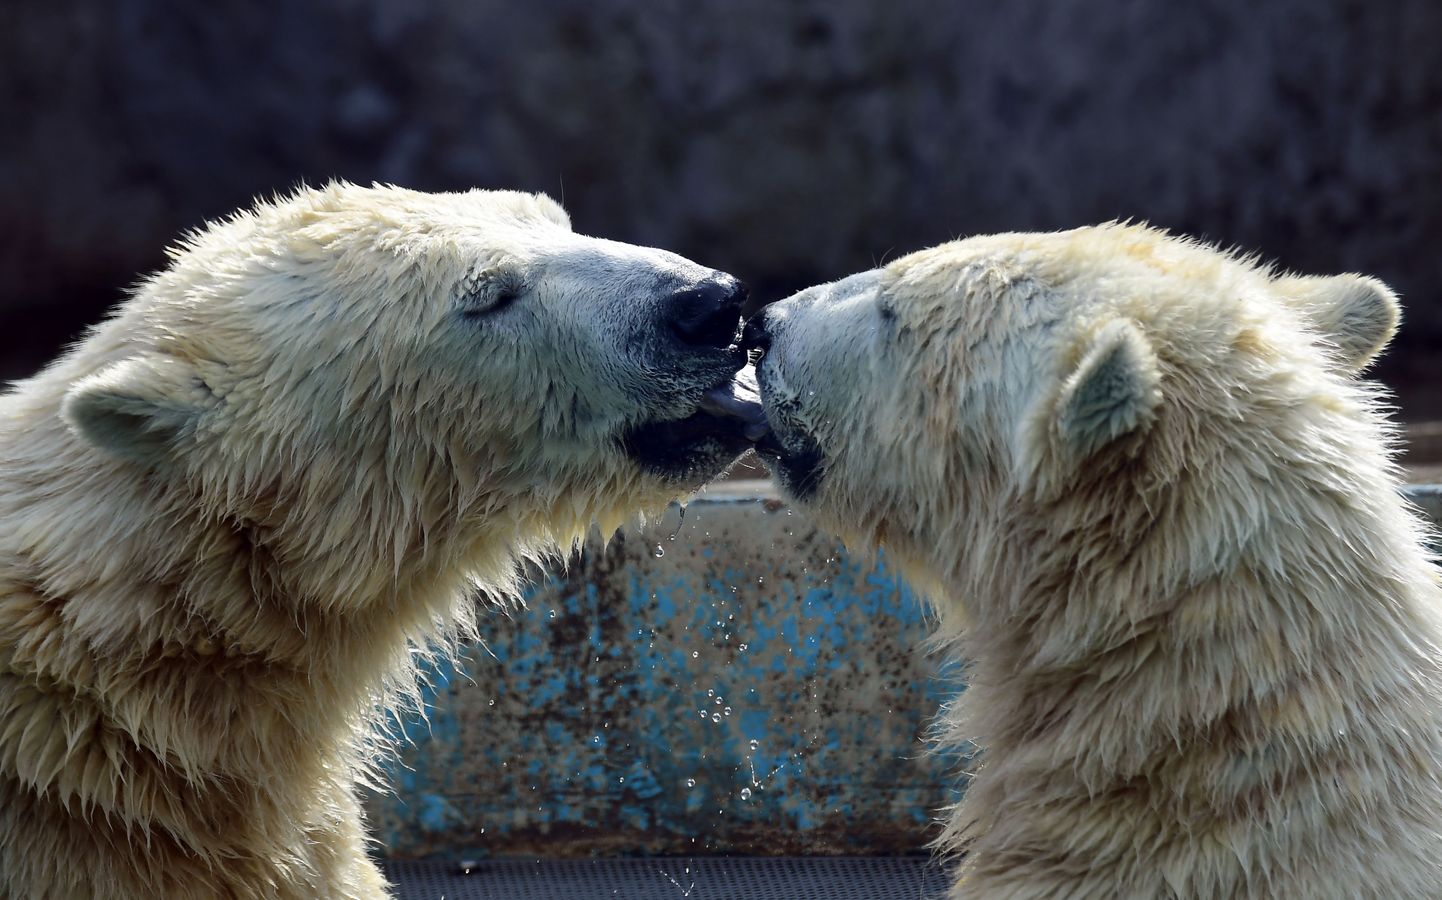 Budapesti loomaaia uued asukad, jääkarud Beliy ja Szeriy on ilmselt uue koduga juba piisavalt tutvunud ning nüüd pühenduvad teineteisele.